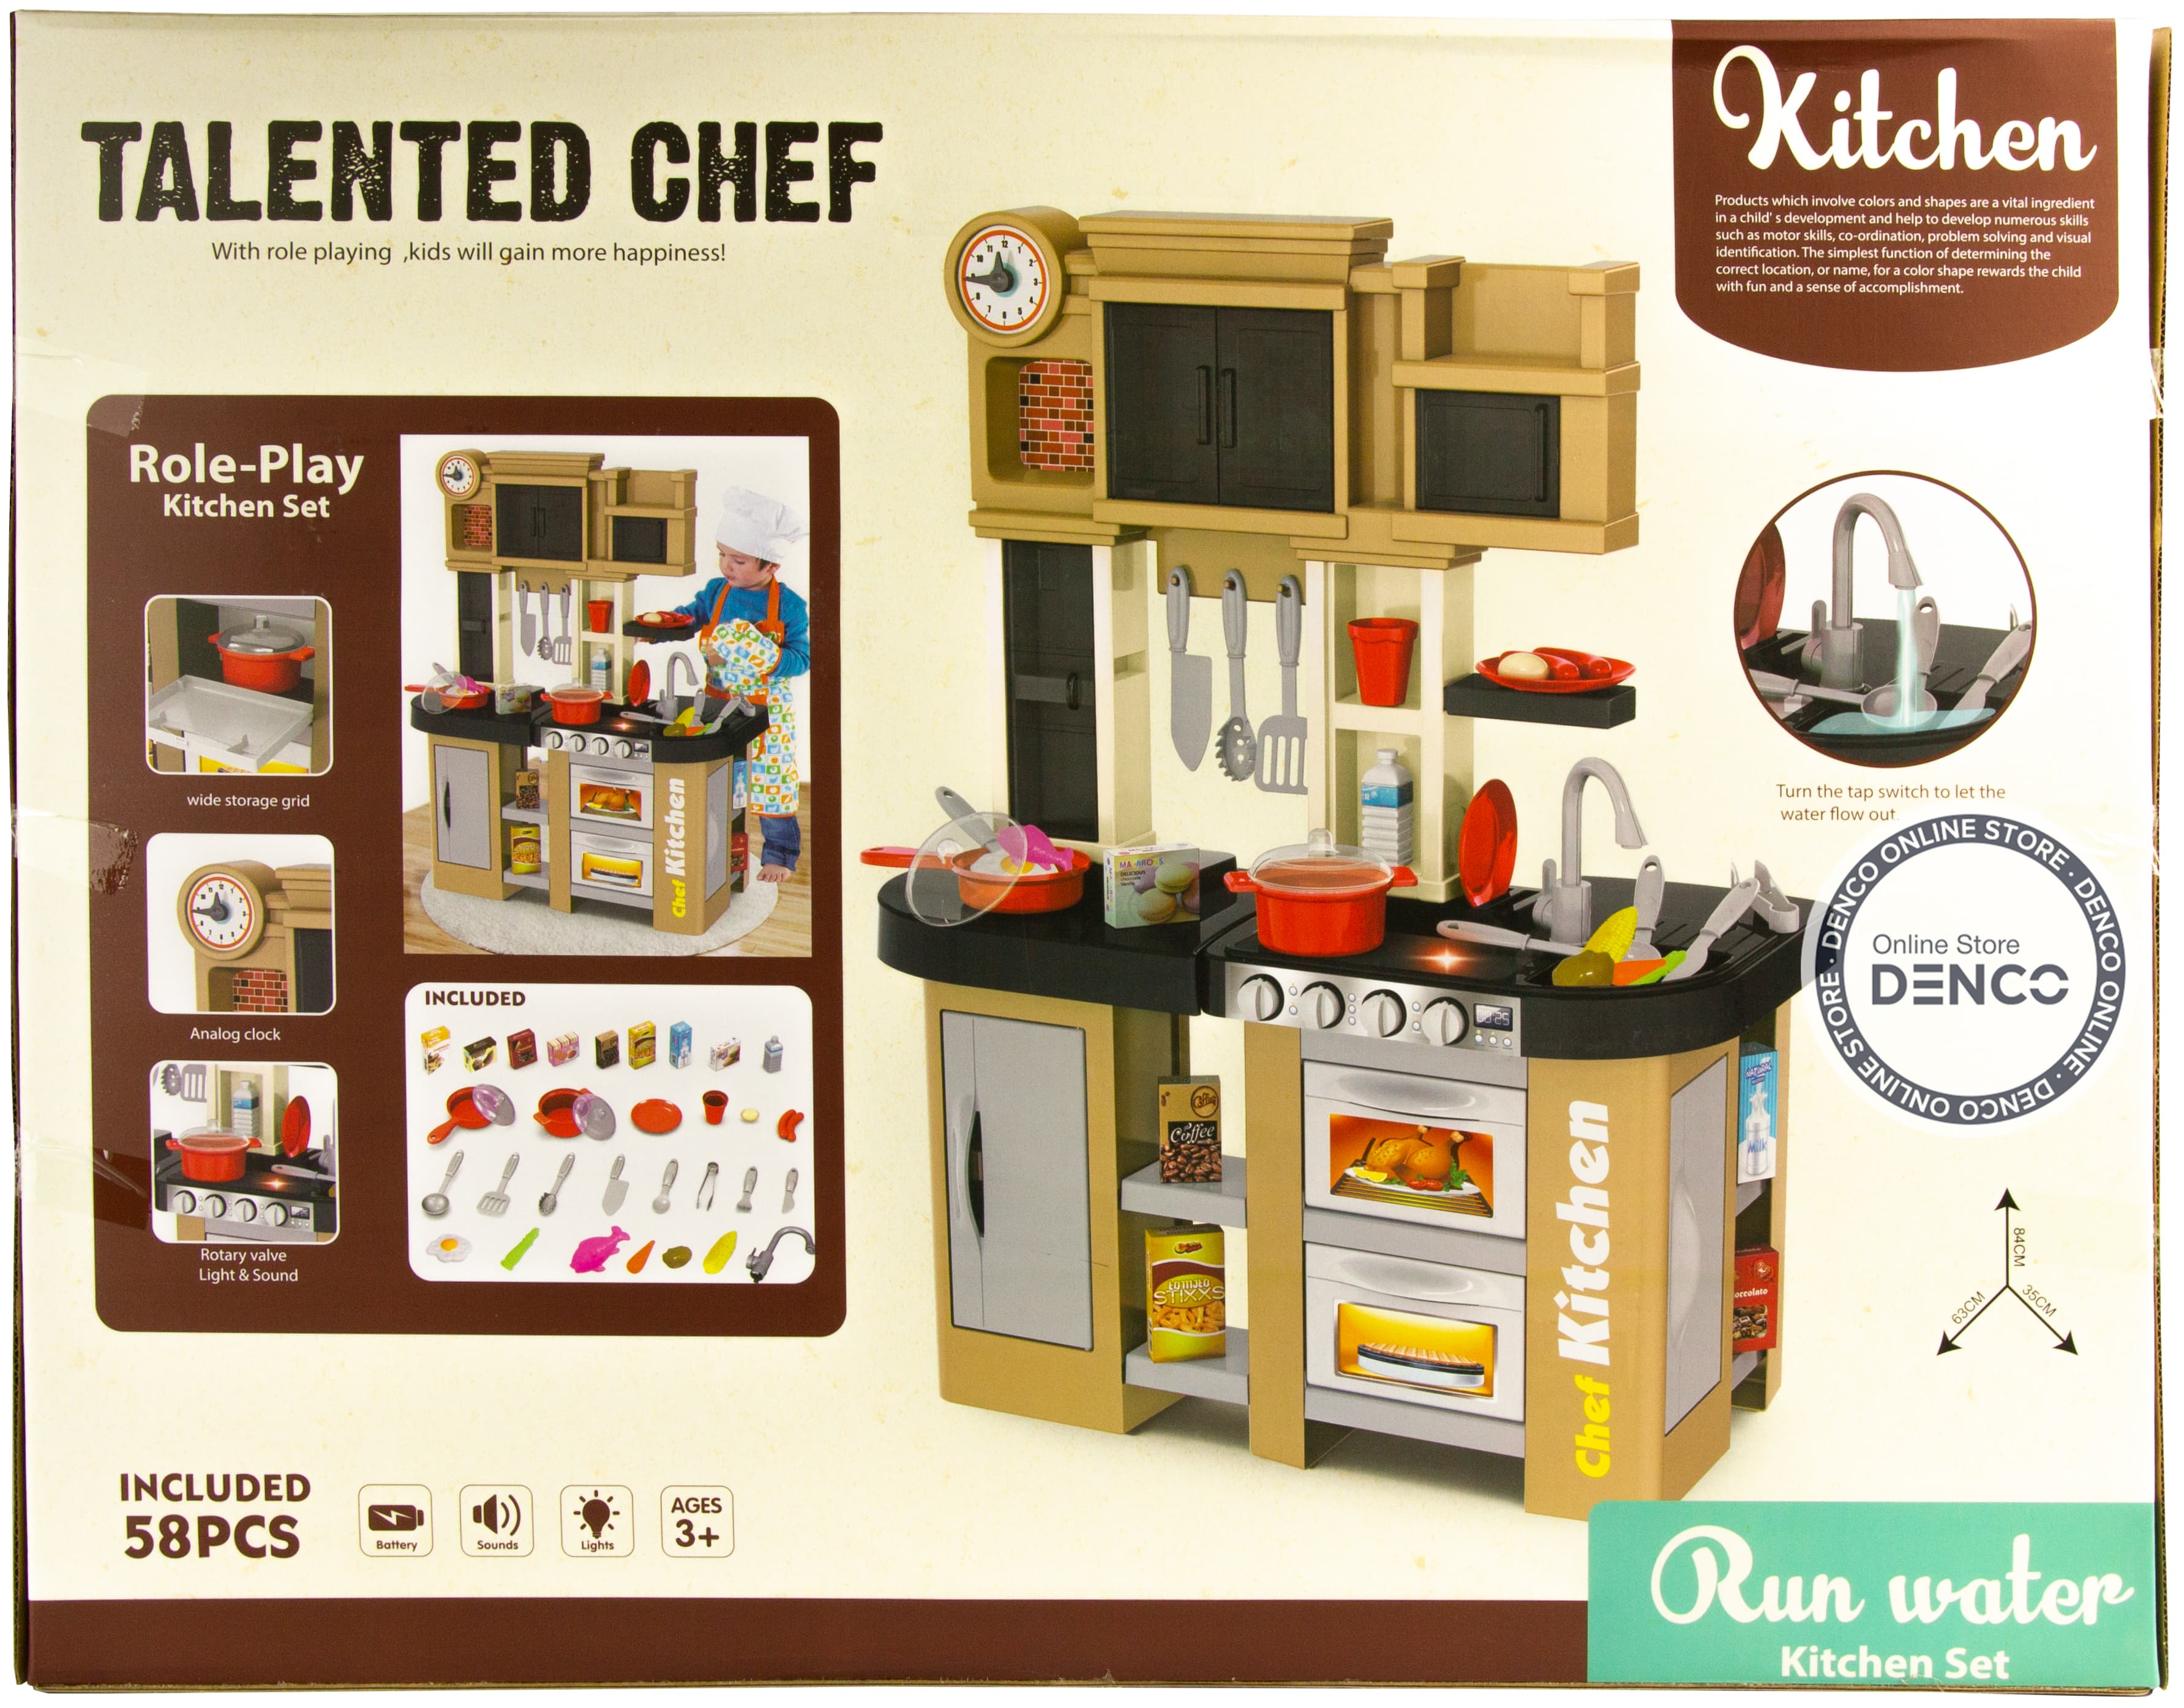 Детская игровая кухня с буфетом, со светом, с водичкой, 58 аксессуаров, высота 84 см., 922-102 / Talented Chef Kitchen